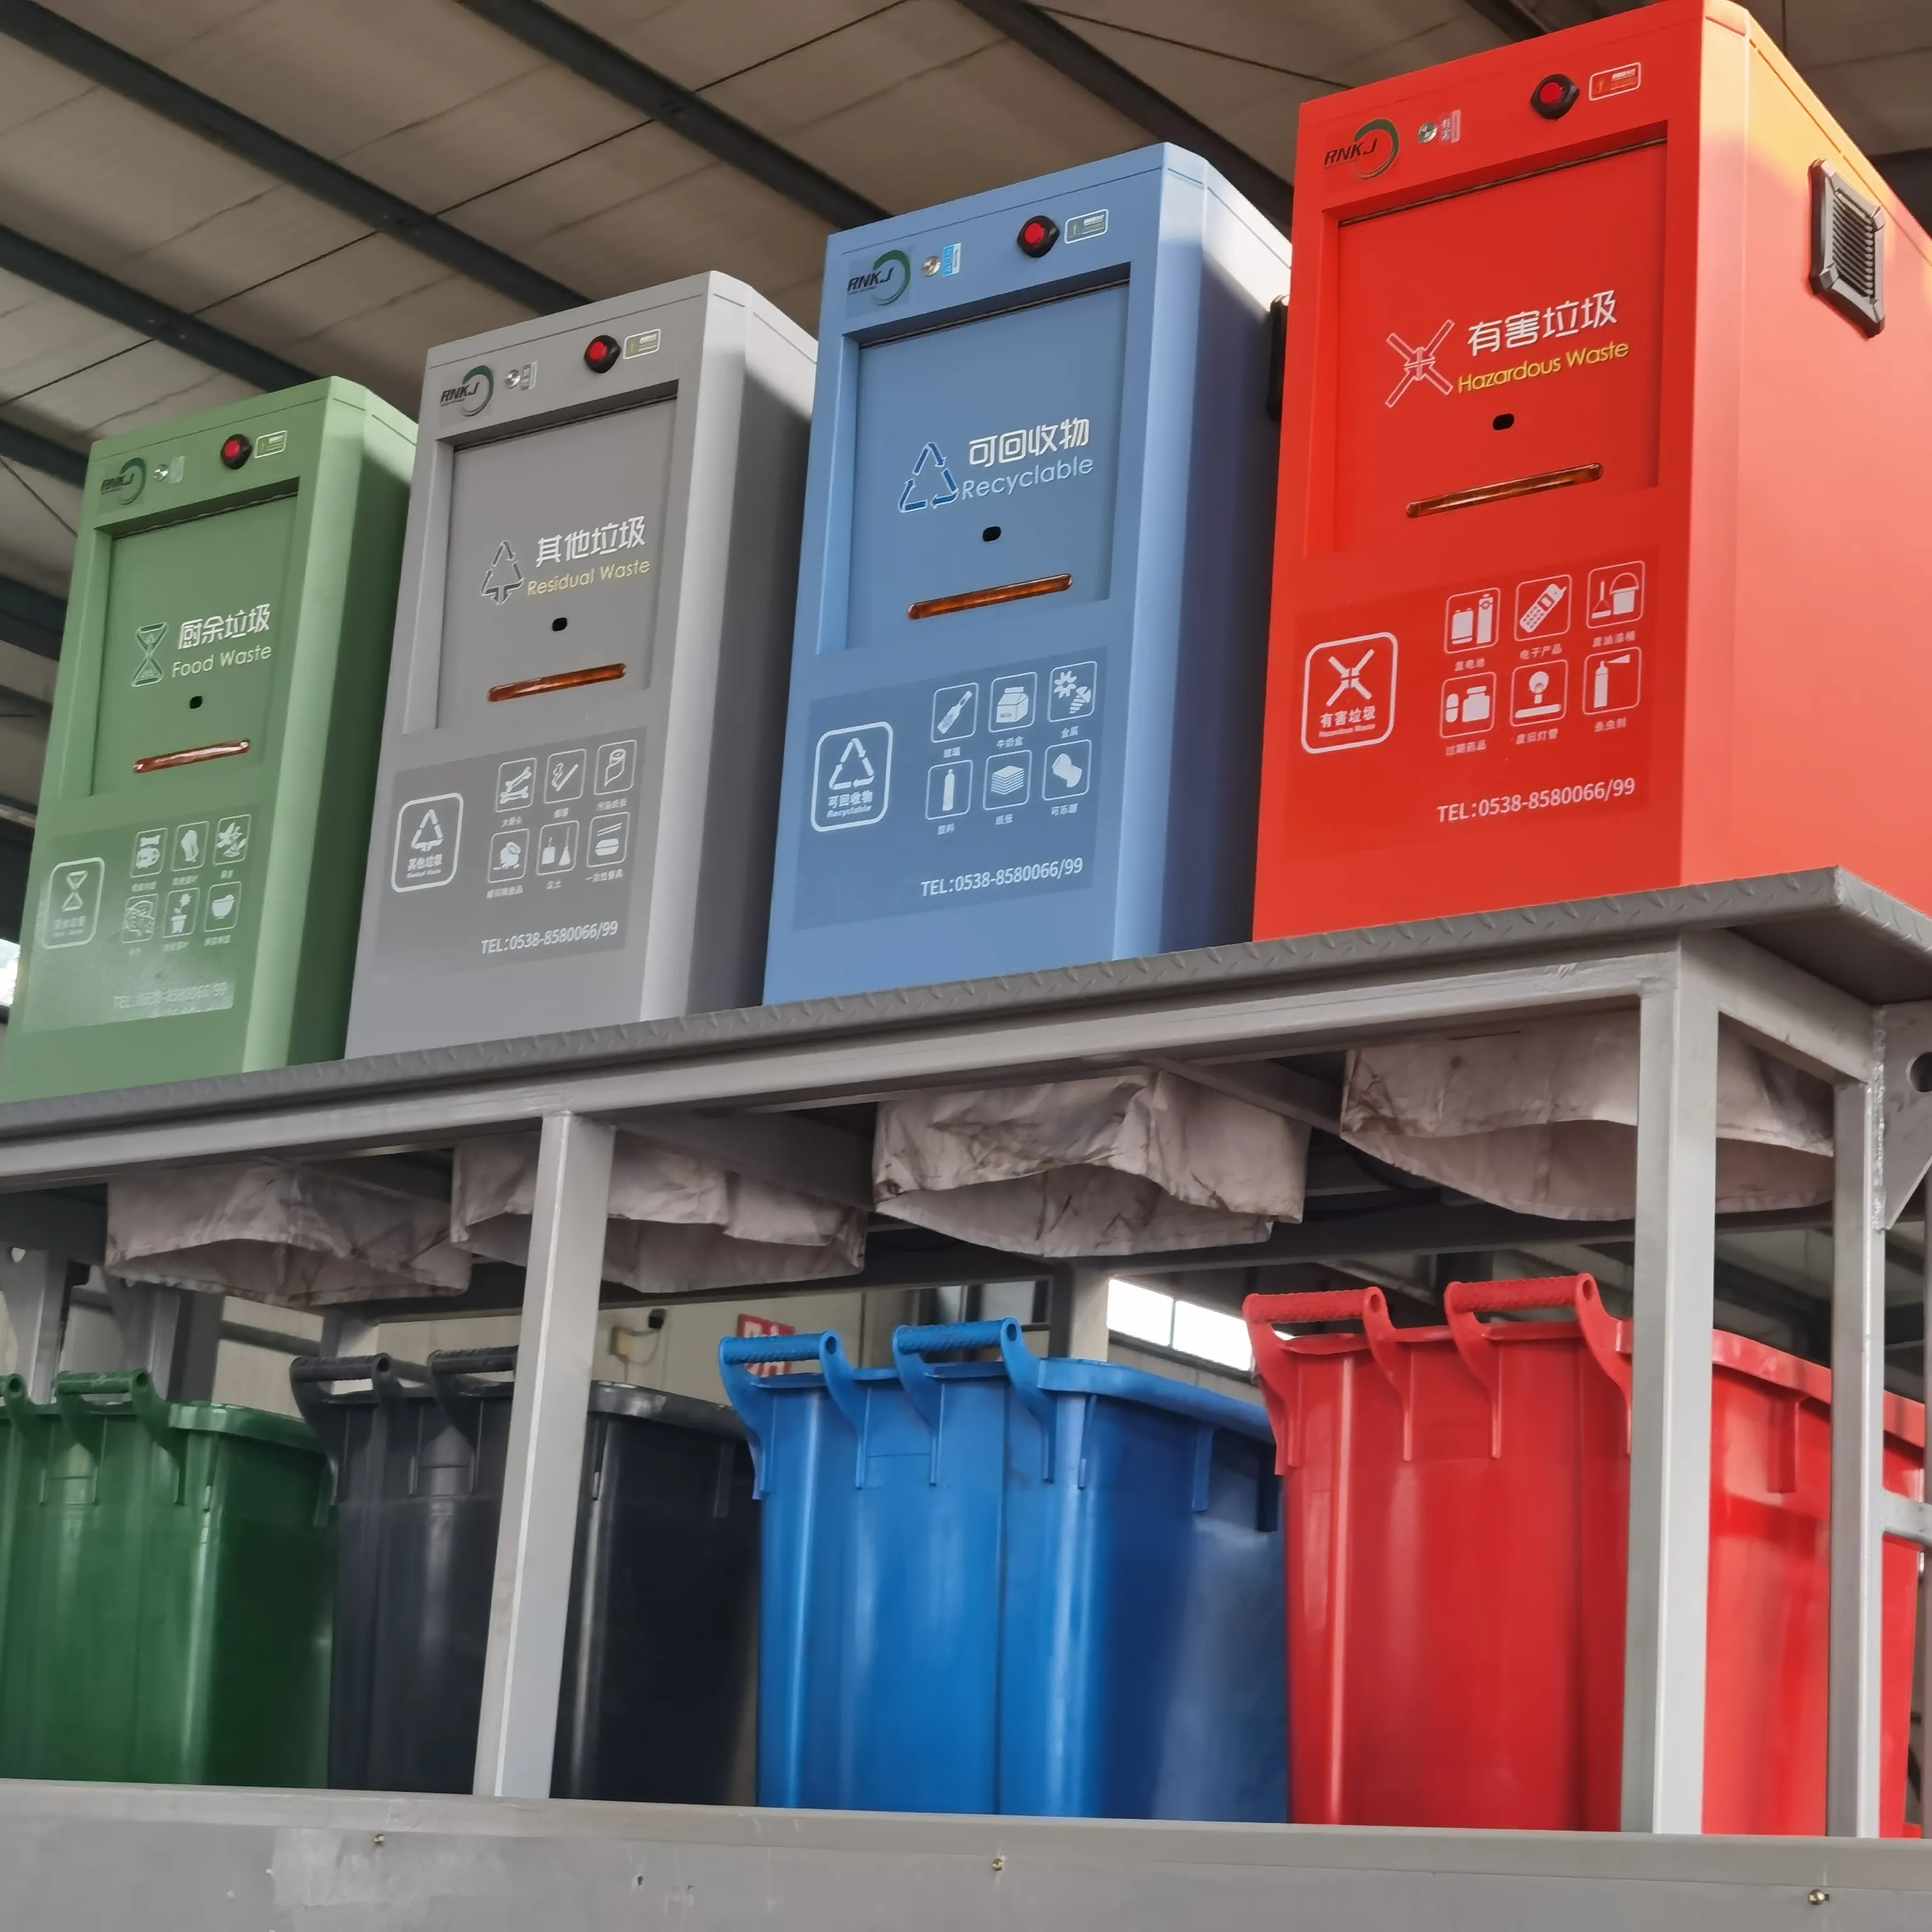 RNKJ 1100L Conteneurs à déchets souterrains à pédale en métal pour la collecte et le recyclage des ordures ménagères à l'extérieur du parc